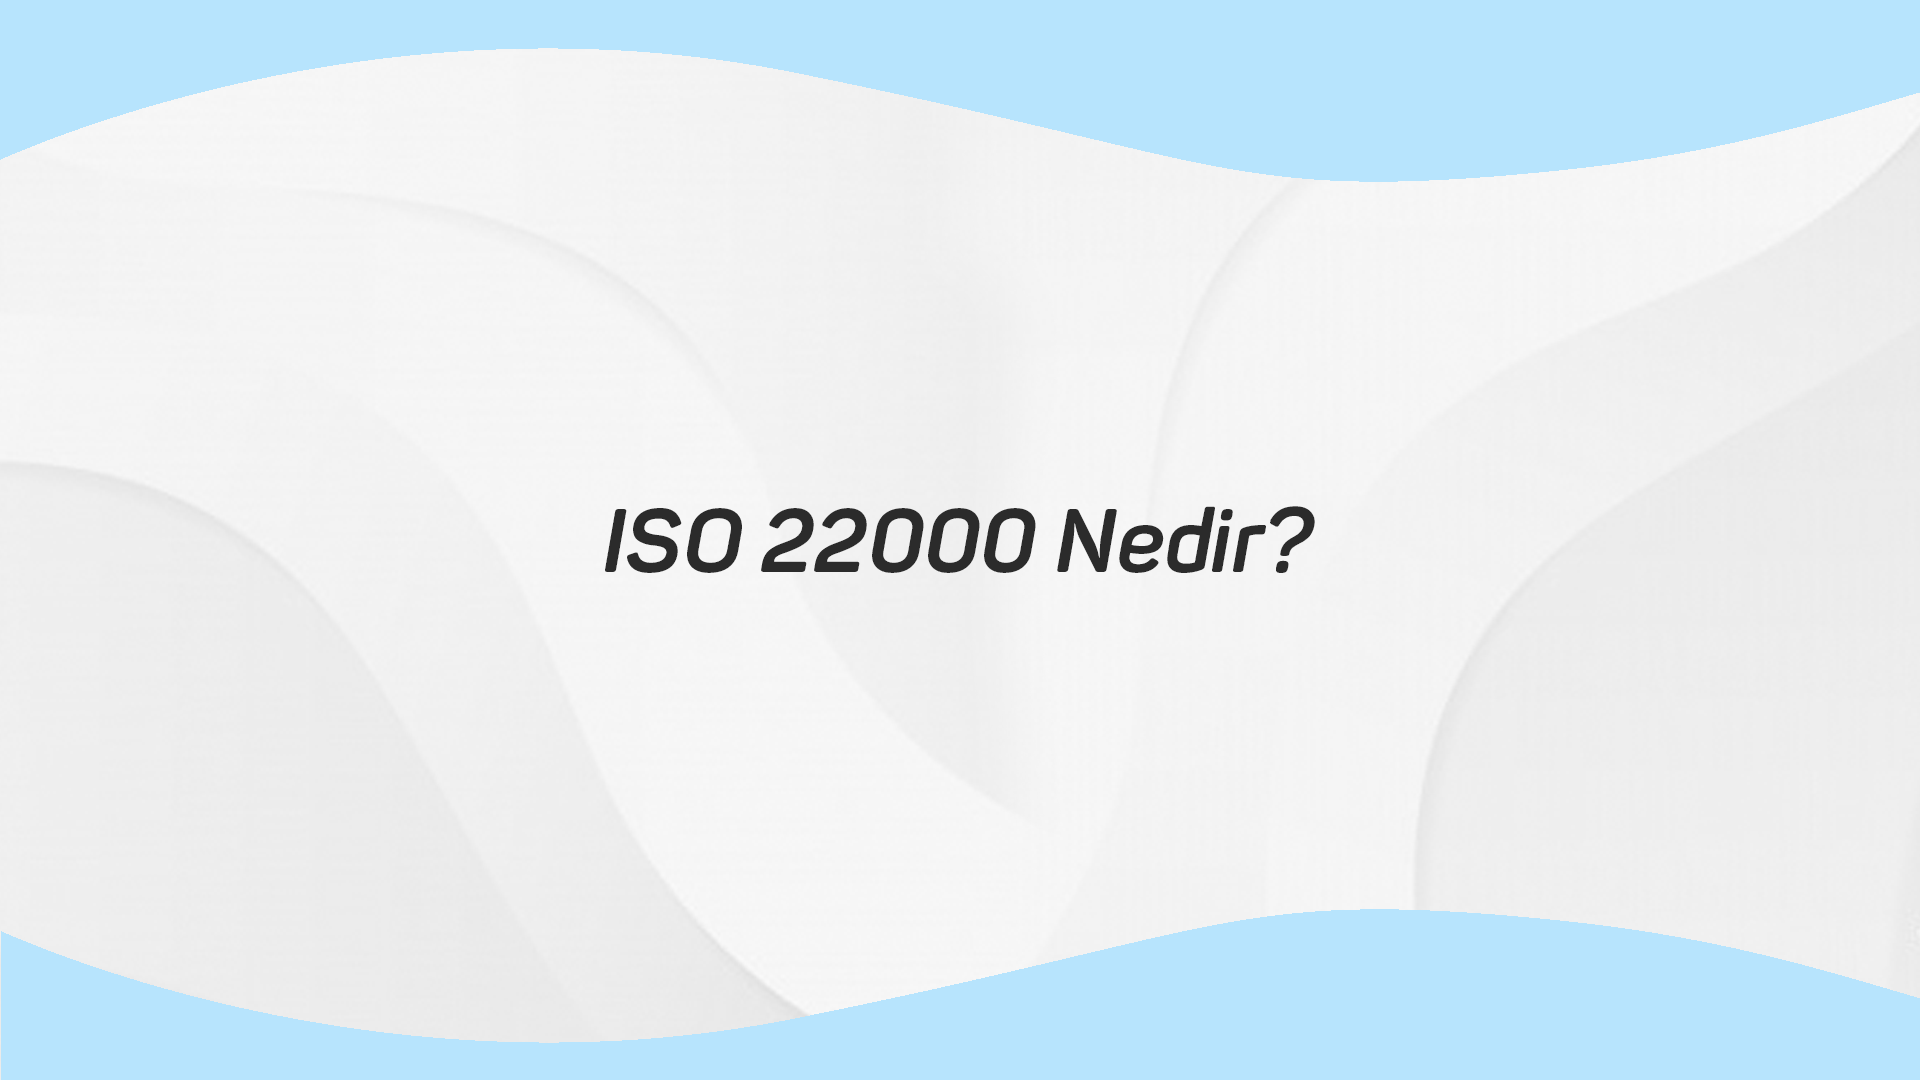 ISO 22000 Nedir?